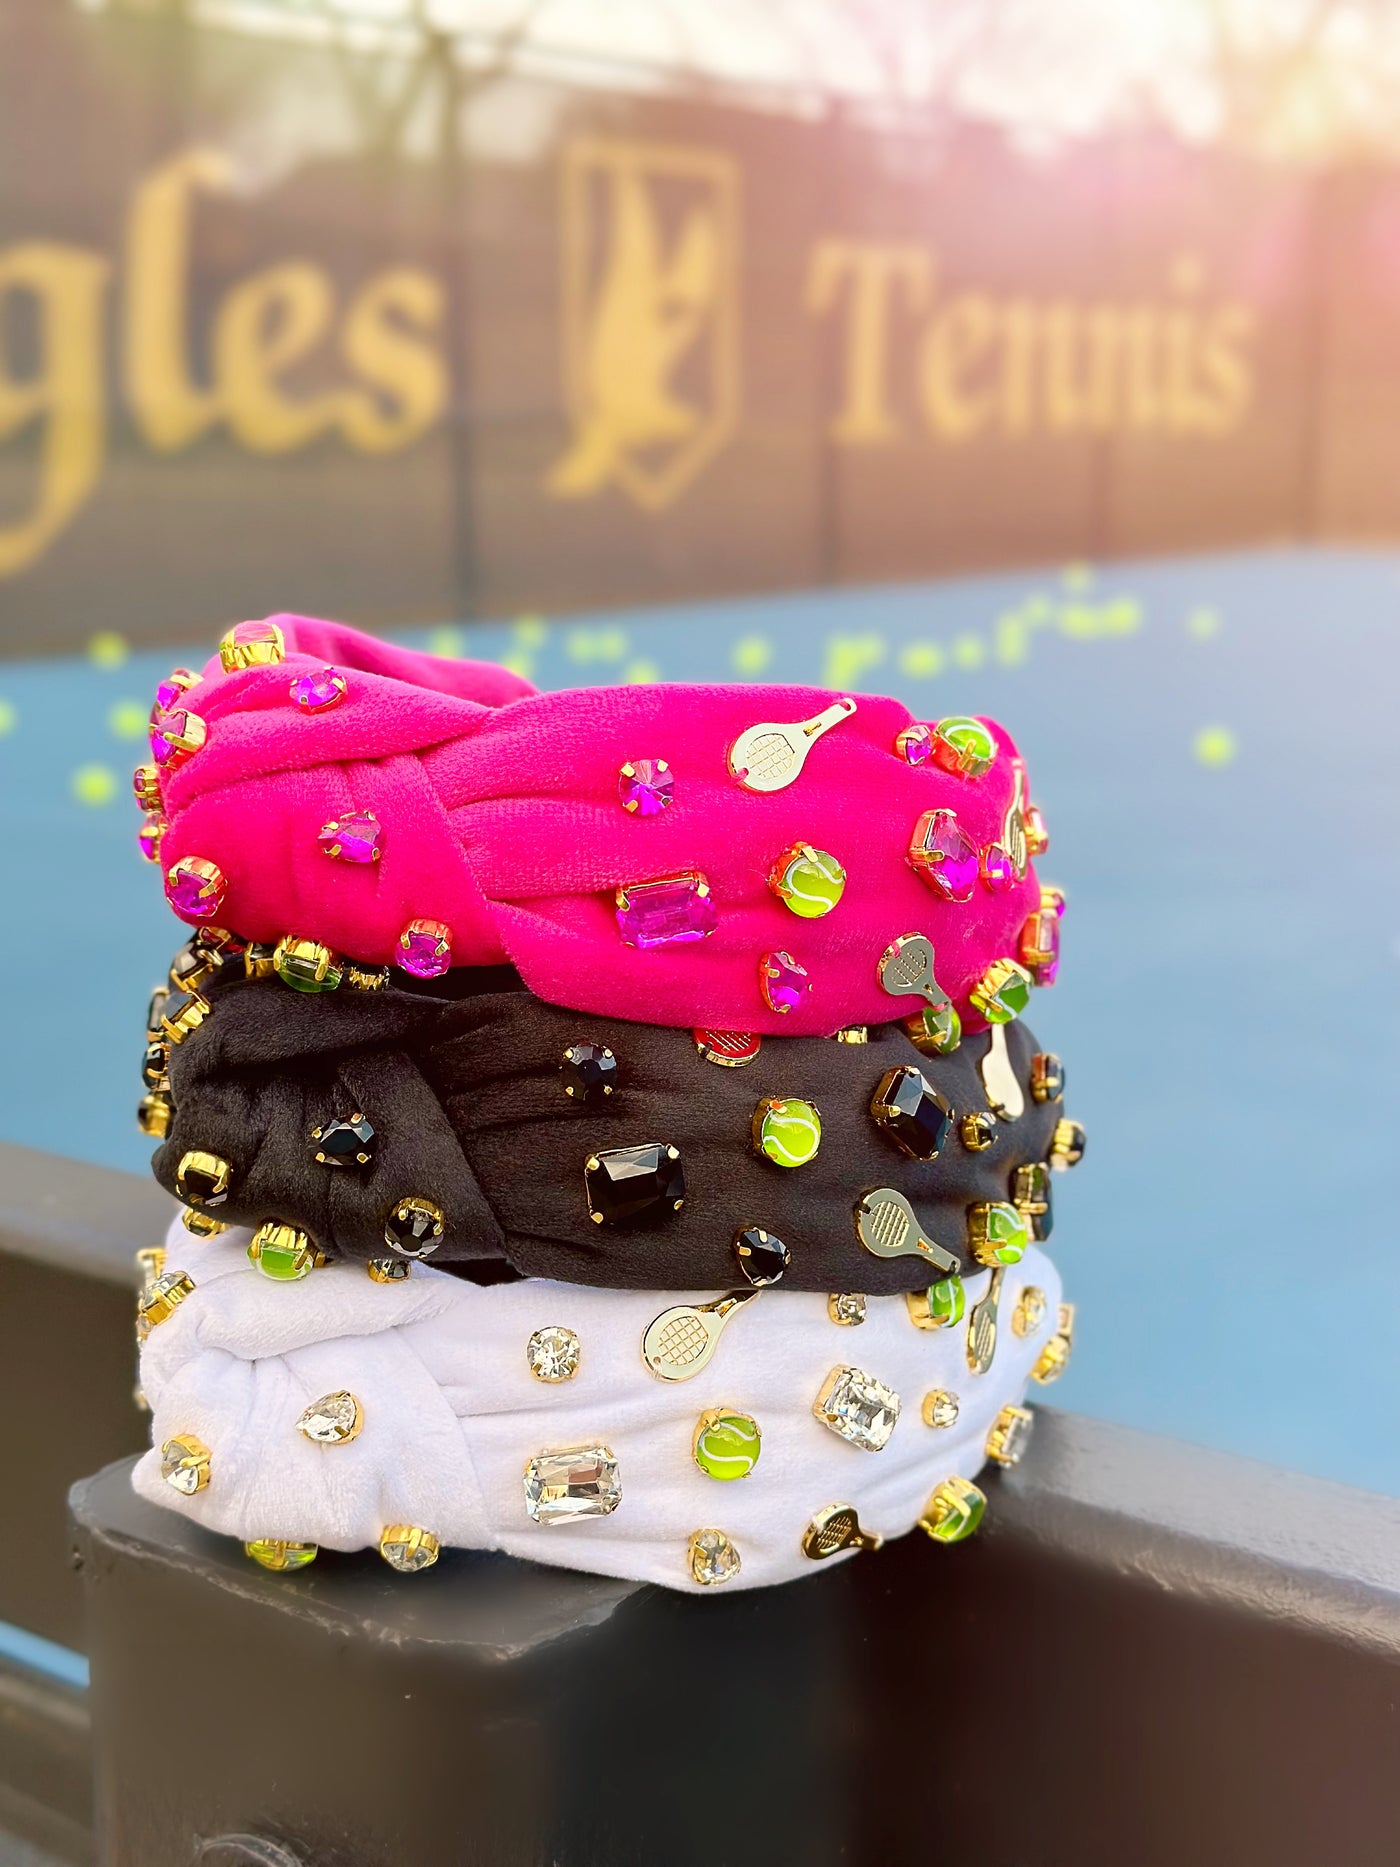 Fan Gear Tennis Headband in Hot Pink